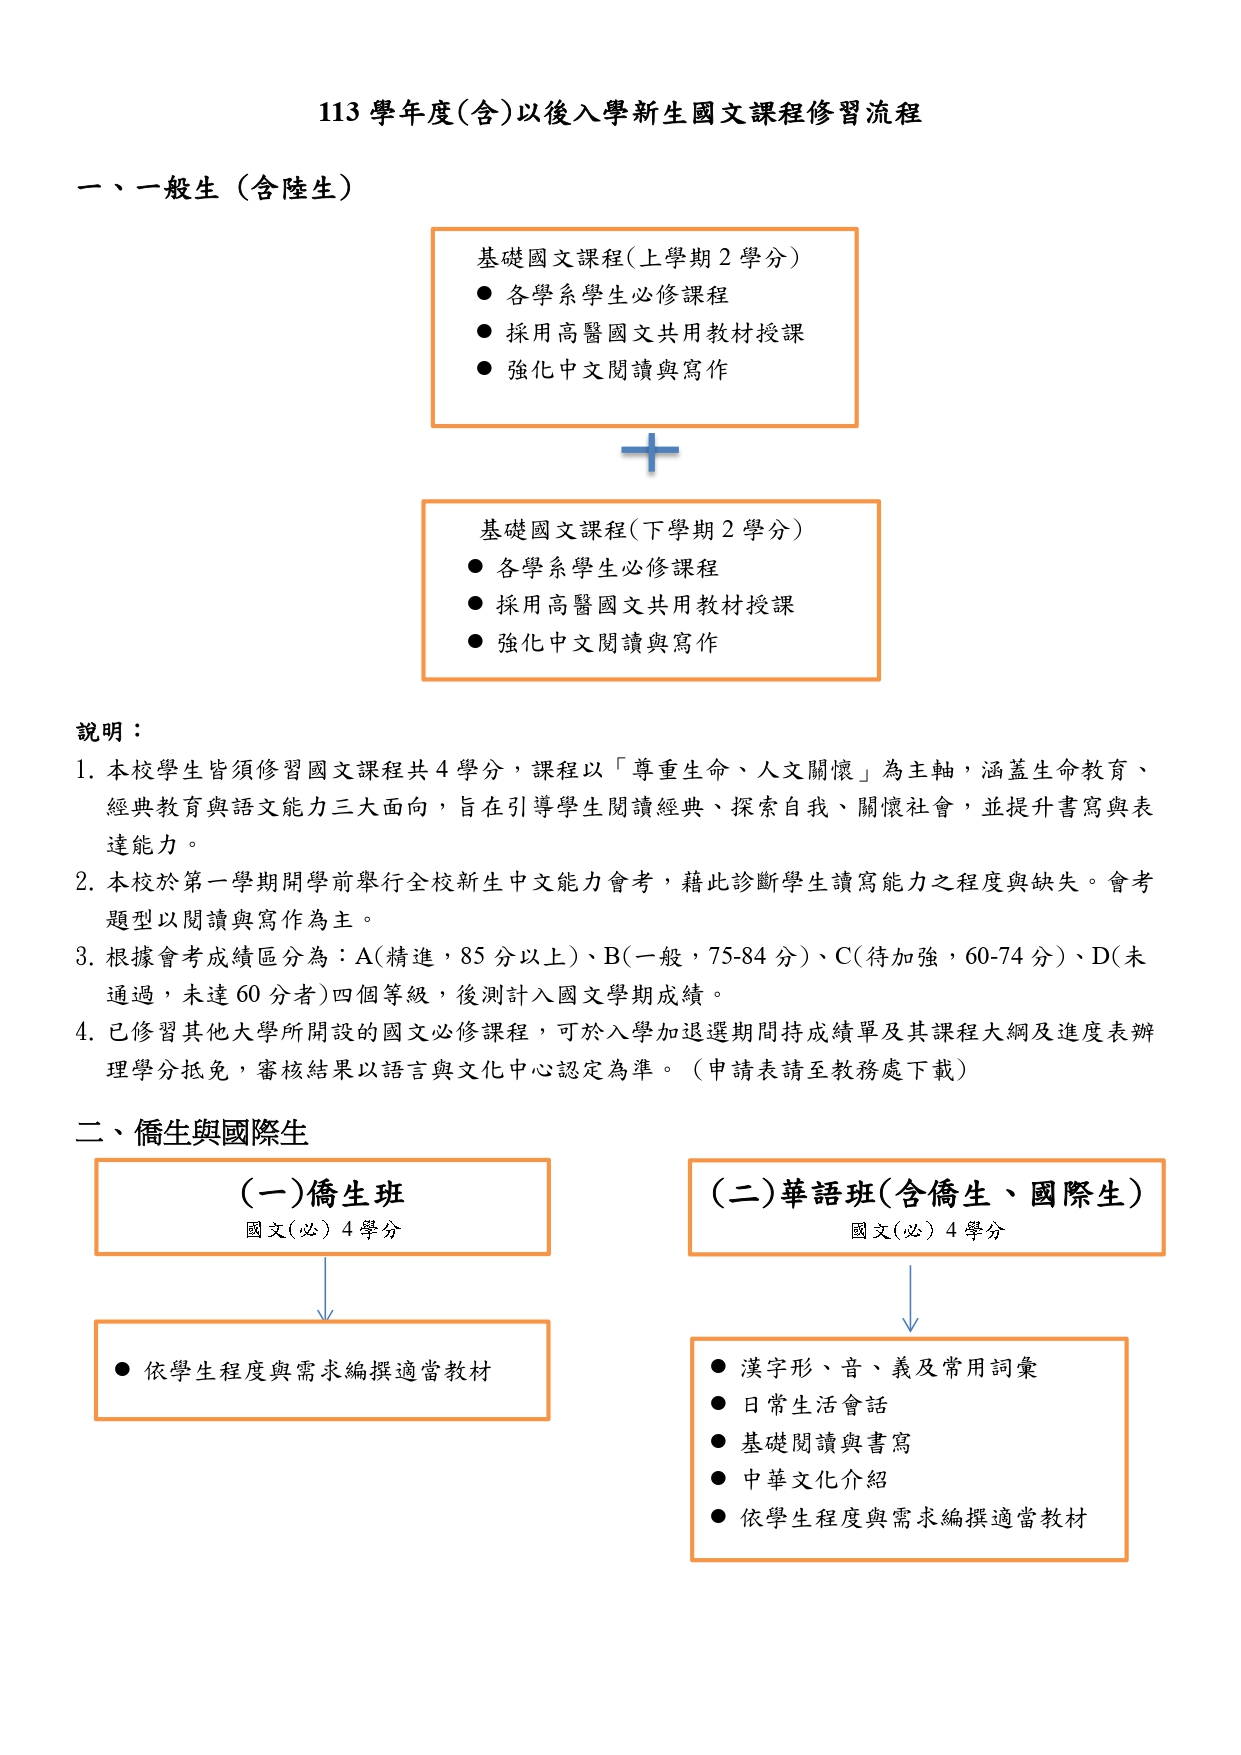 113國文修習流程 page 0001